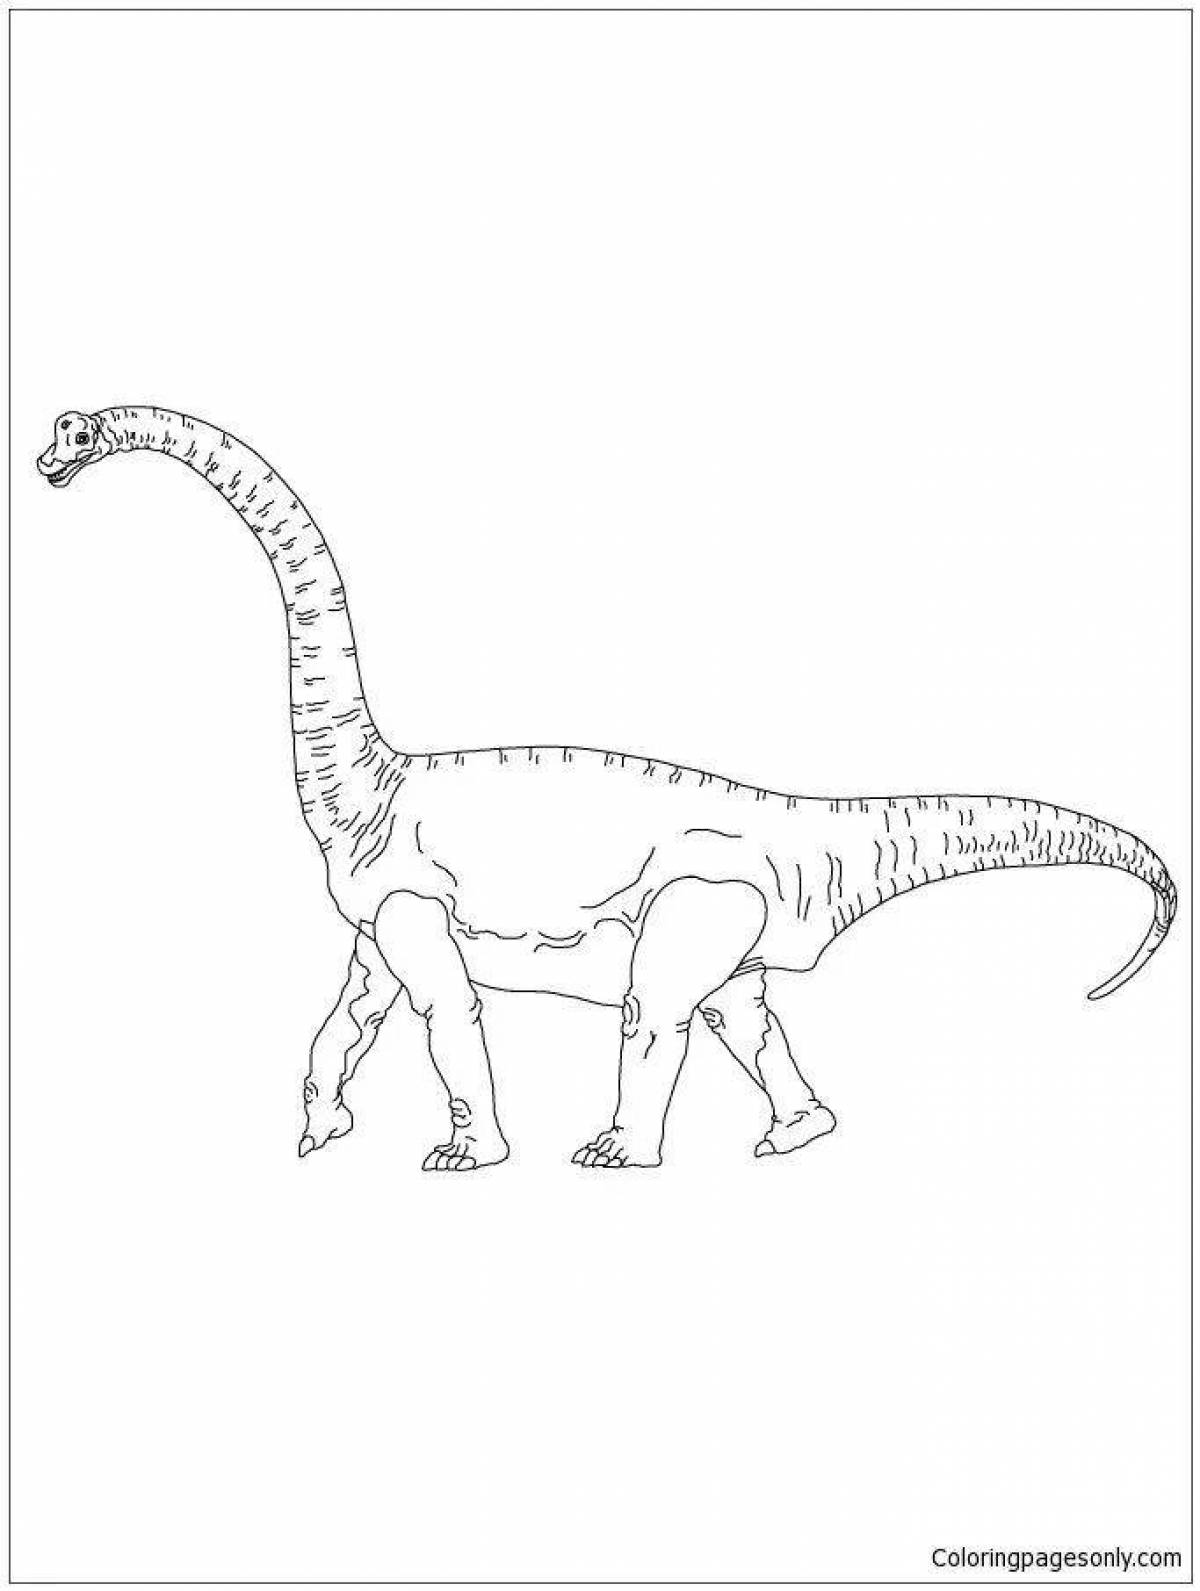 Coloring page elegant brachiosaurus